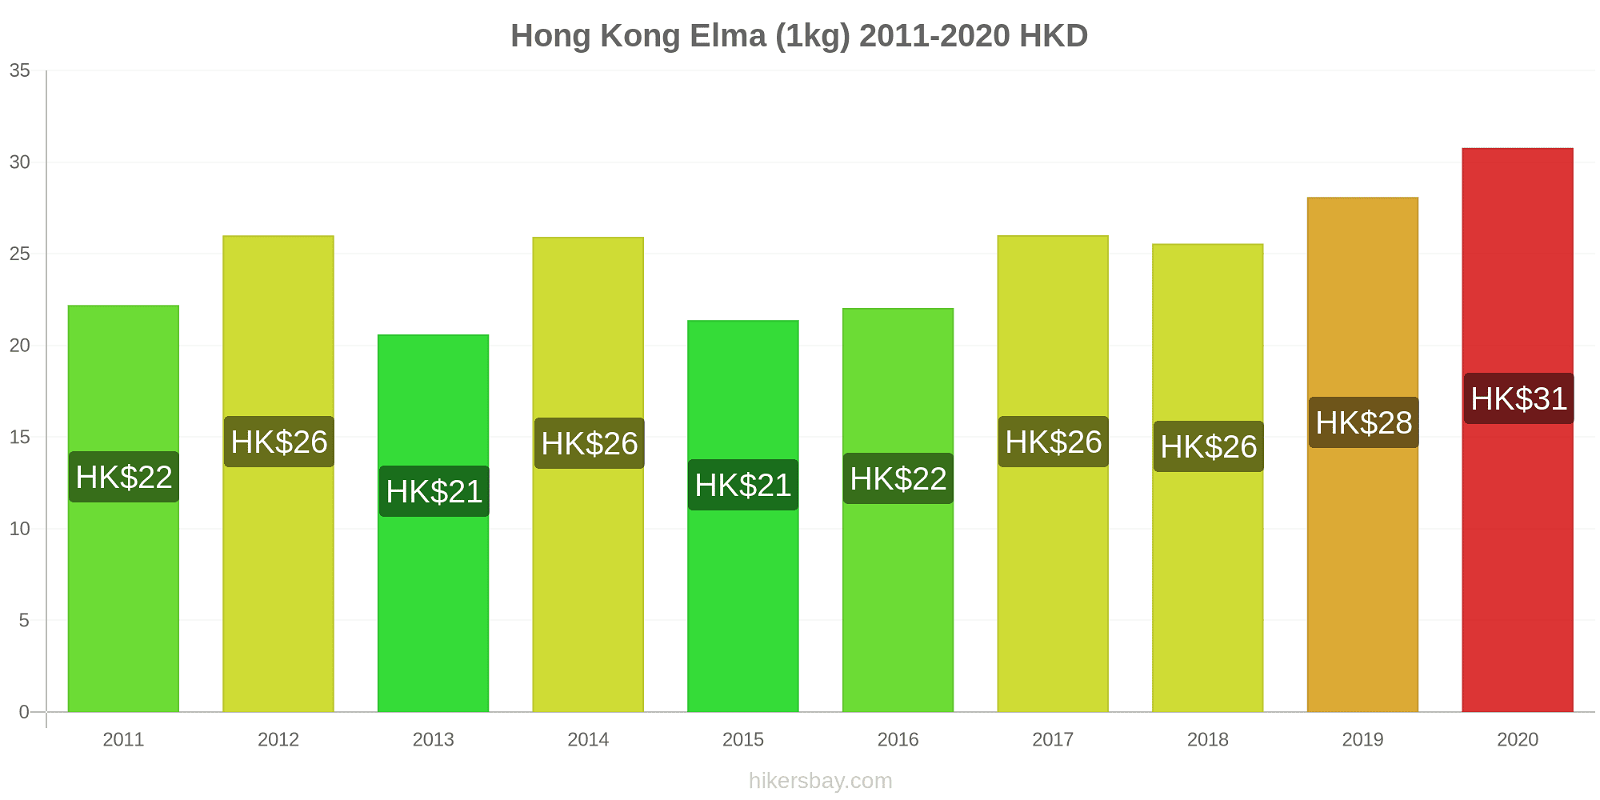 Hong Kong fiyat değişiklikleri Elma (1kg) hikersbay.com